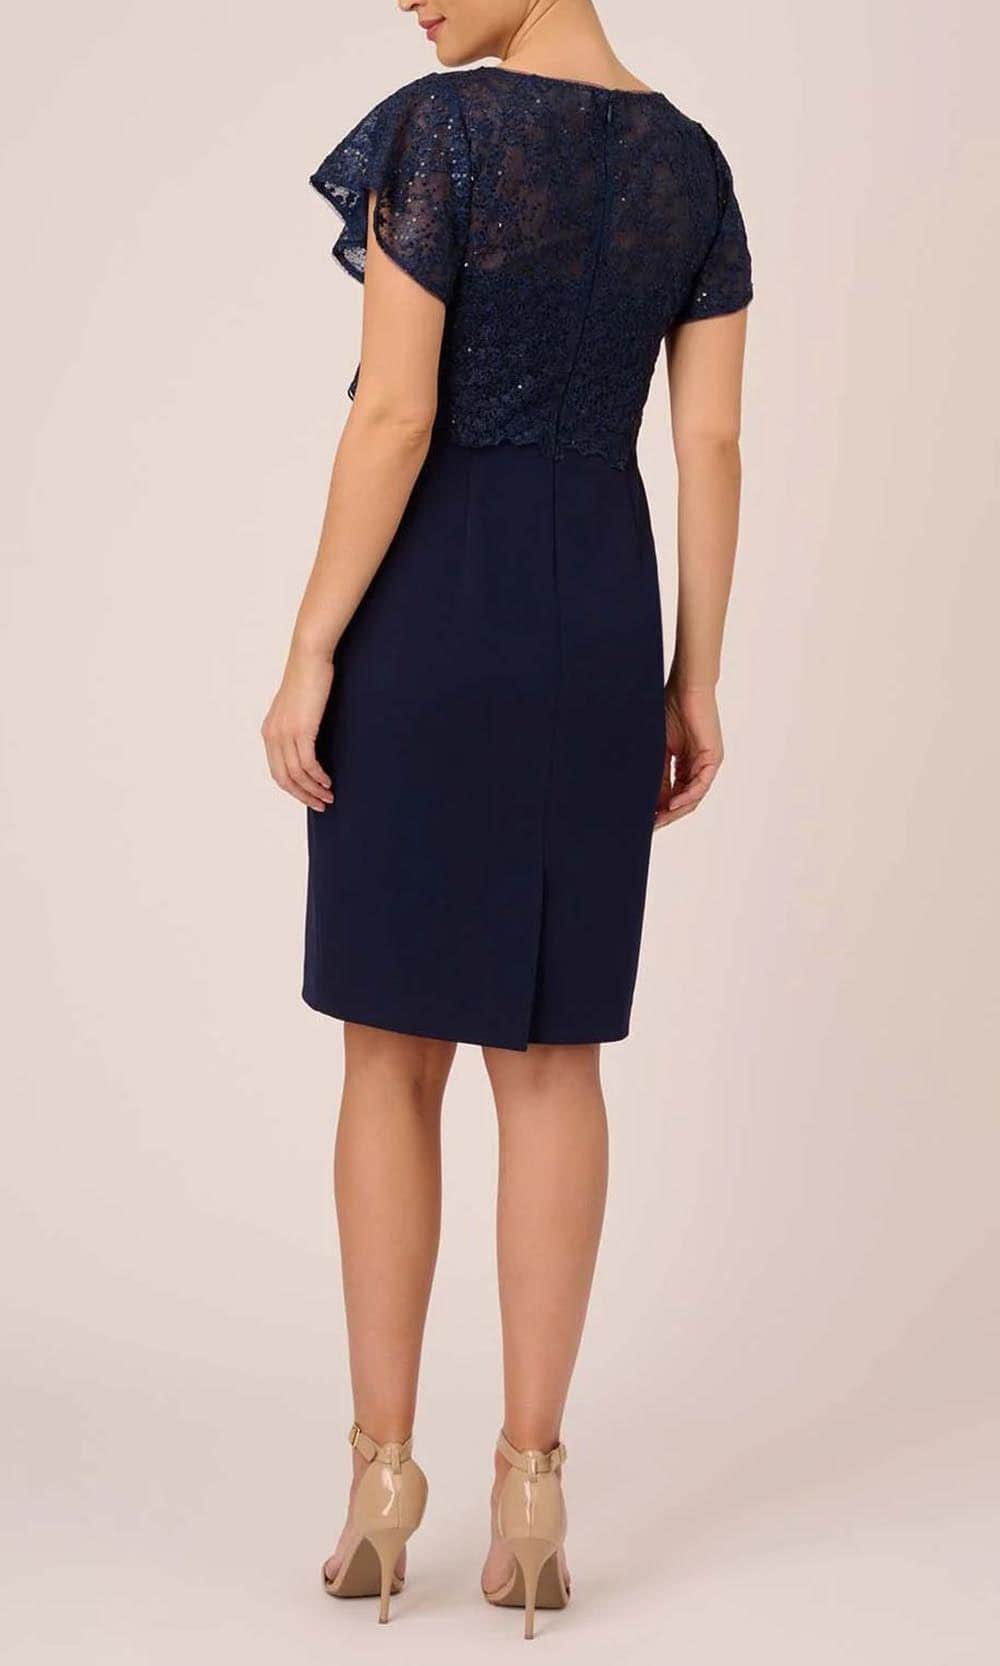 Adrianna Papell AP1D104957 - Knee Length Lace Blouson Dress Cocktail Dresses